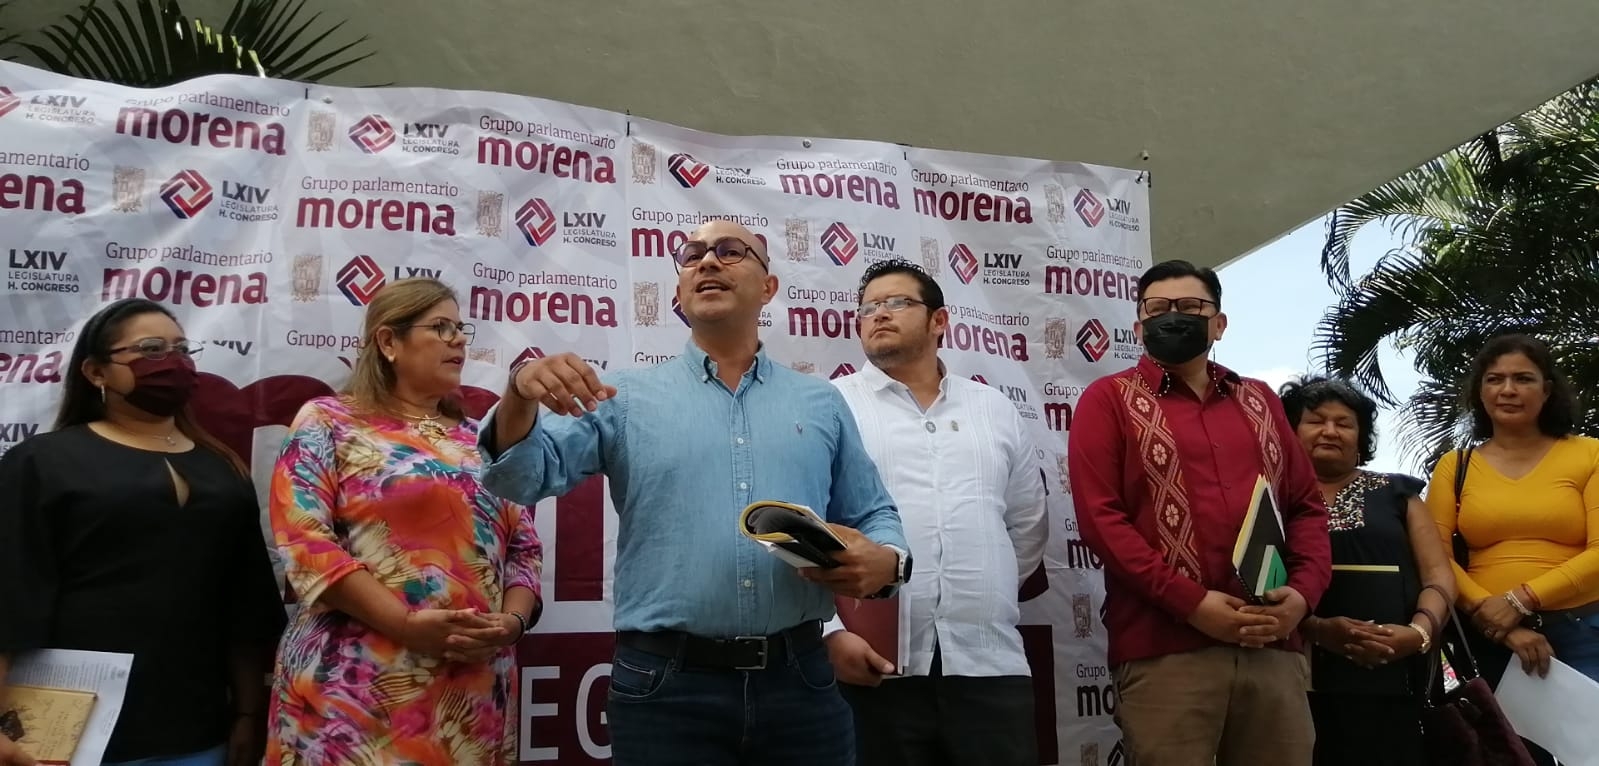 Campeche: Diputados de Morena llaman oportunistas a directivos de la Unacar